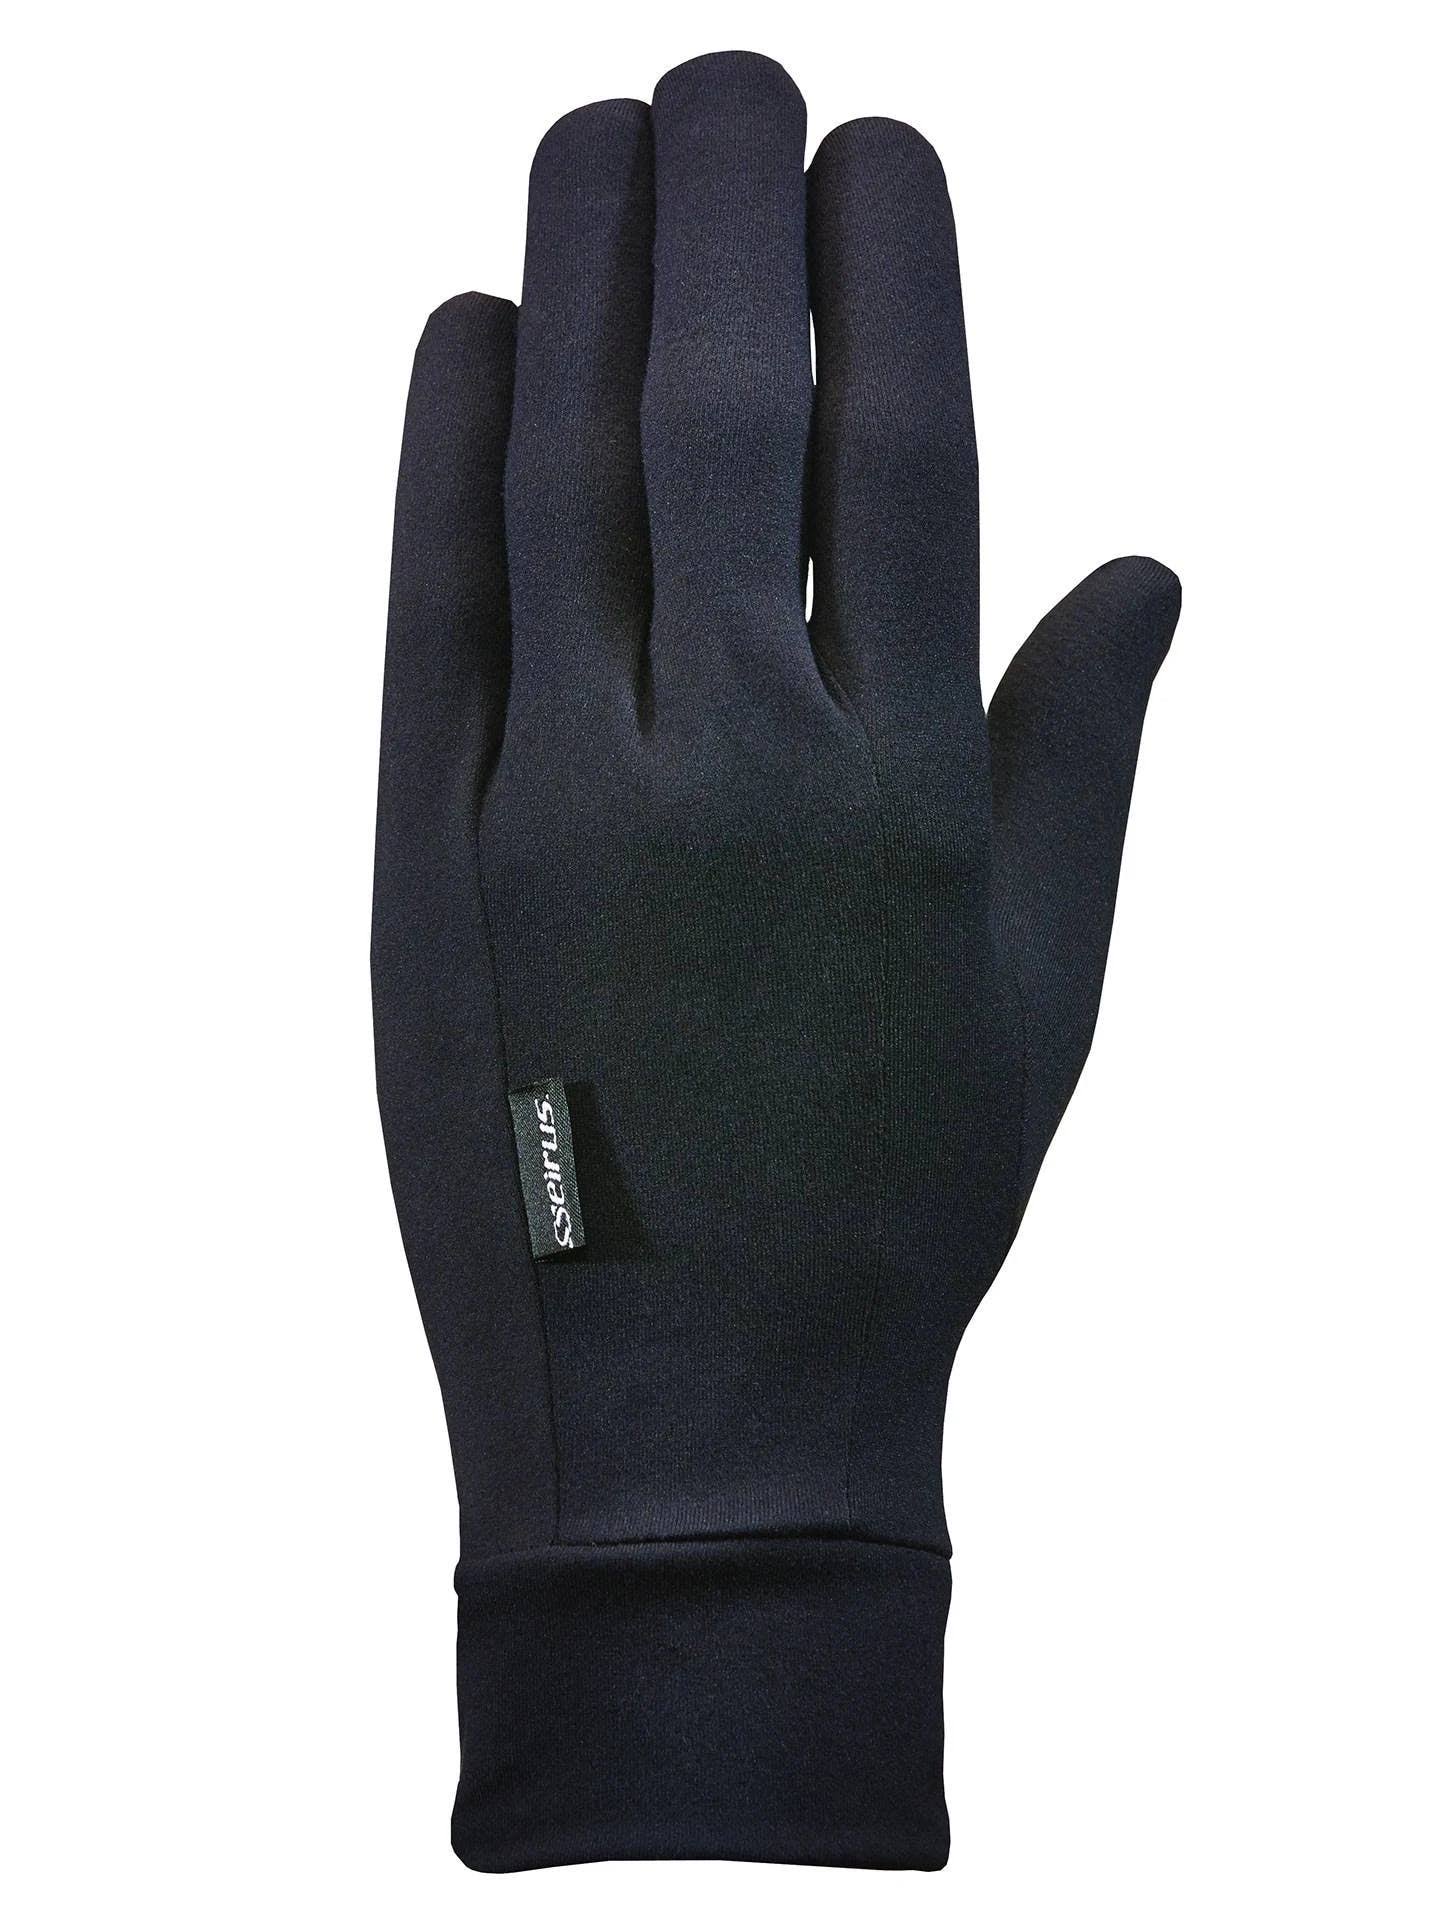 Seirus Innovation 2116 Heatwave Glove Liner - with Heatwave Technology, Black